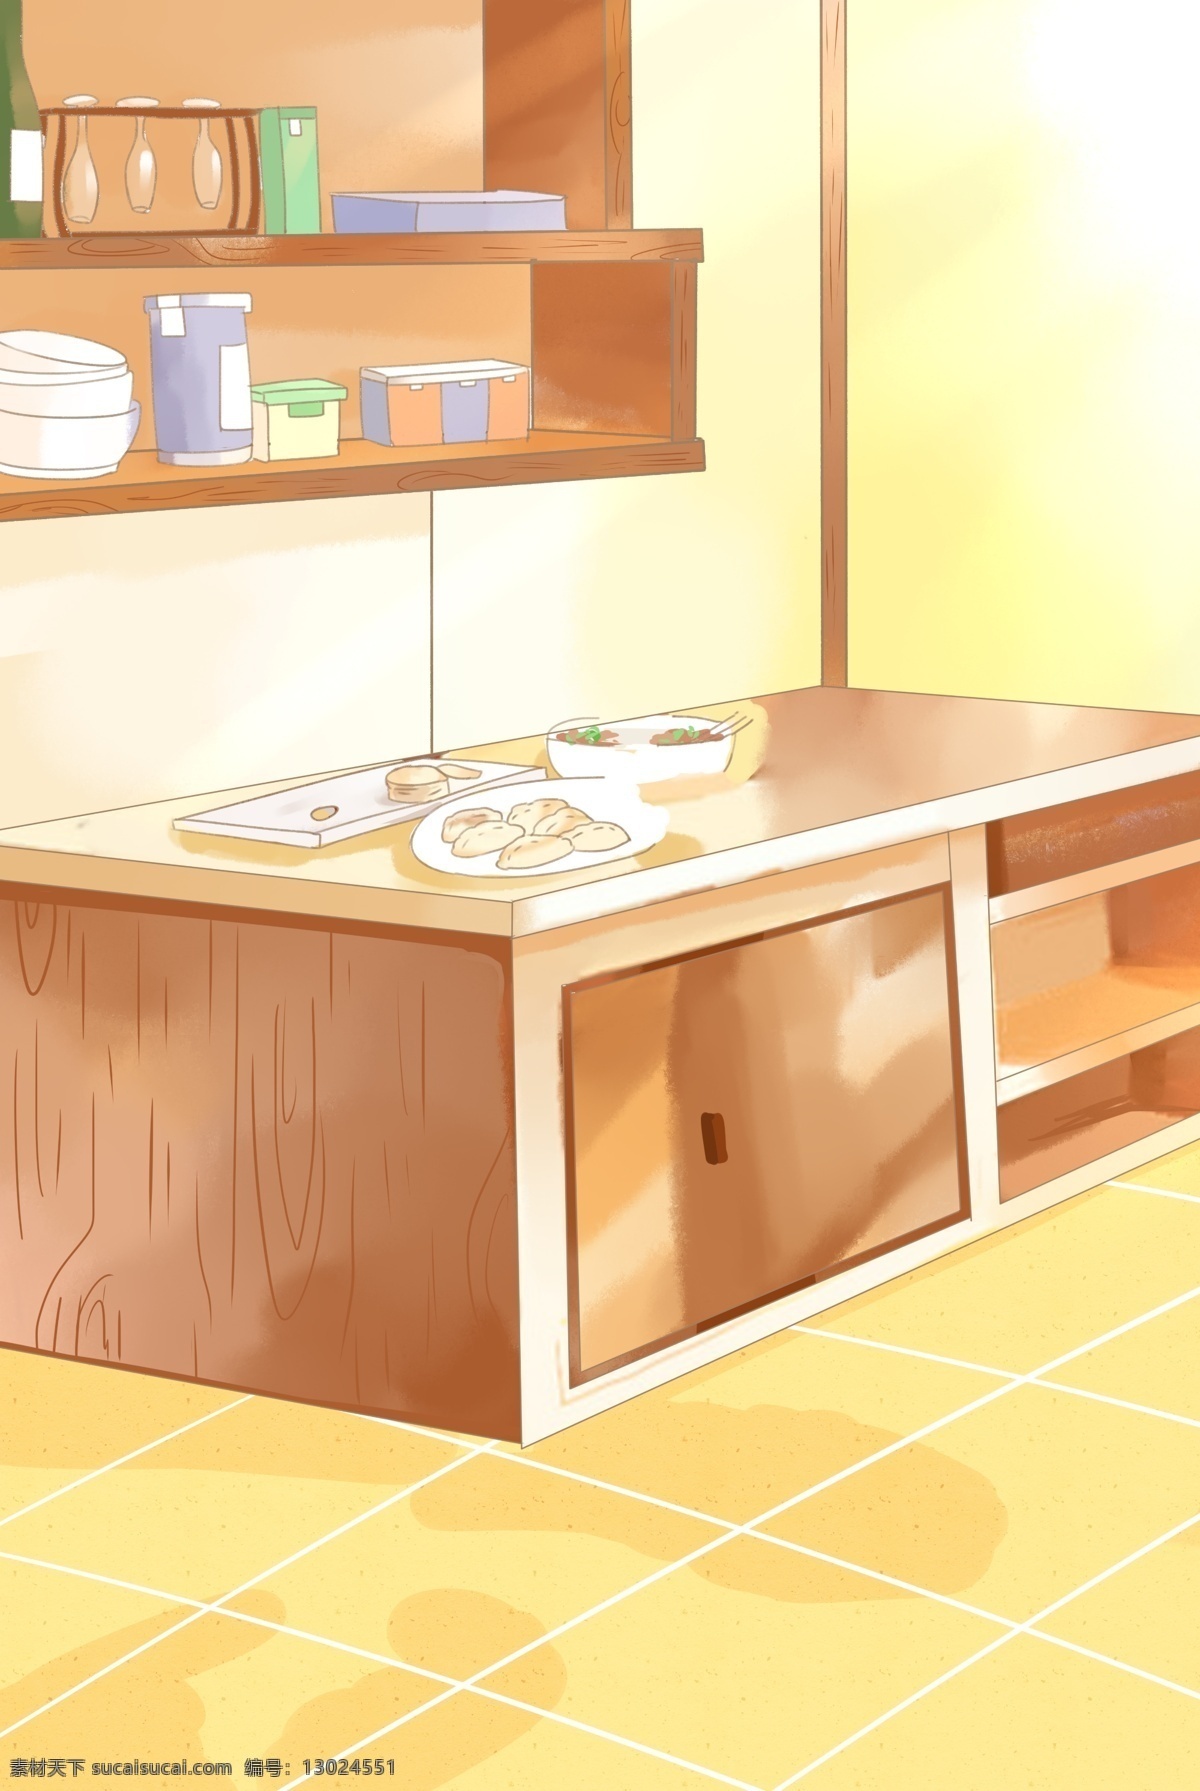 暖 色系 厨房 一角 背景 卡通 厨房里的柜子 置物架 牛奶 碗具 洗碗